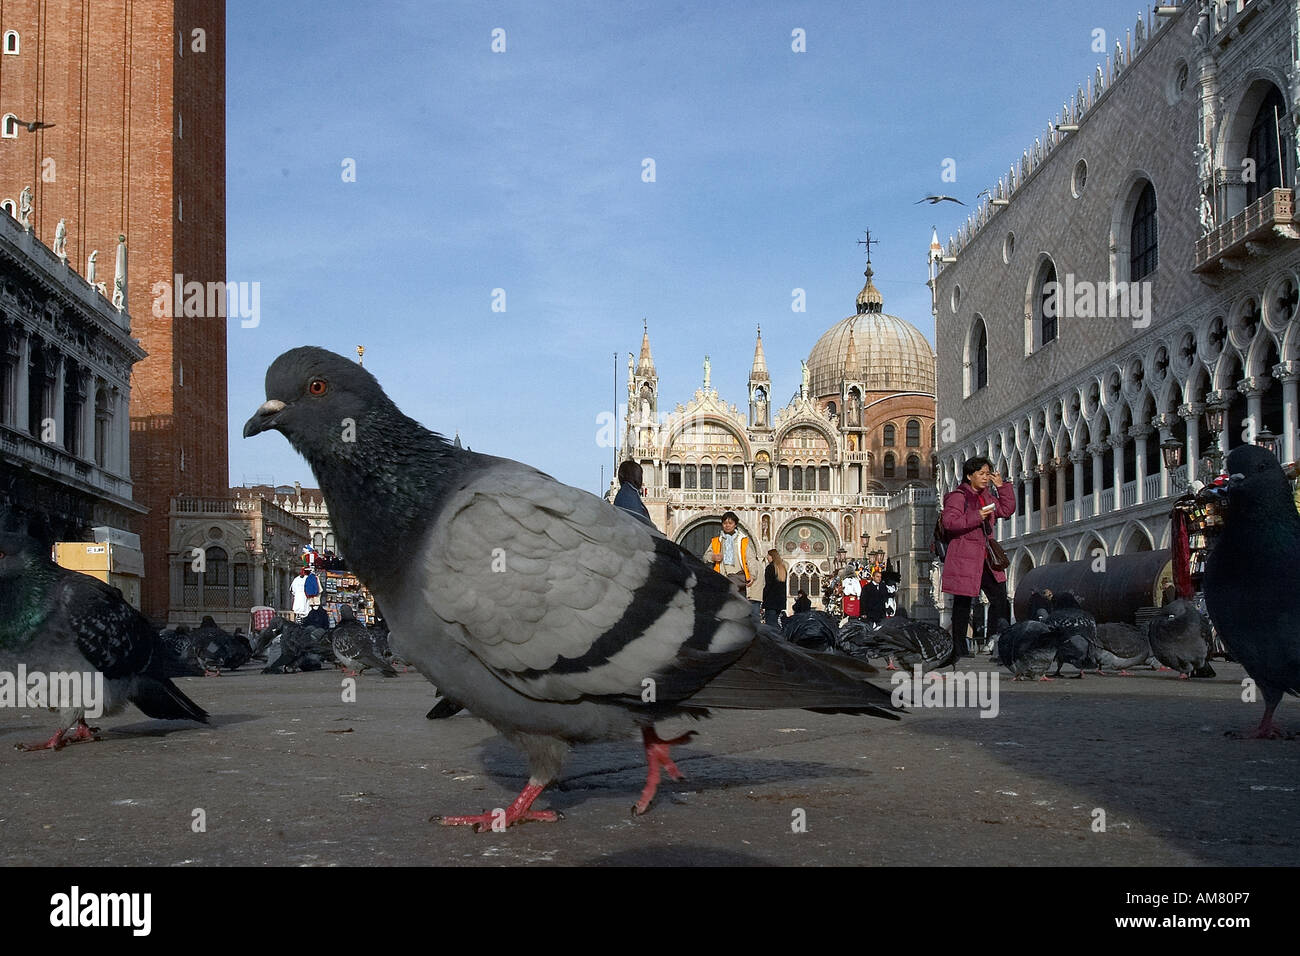 Venice, San Markus Plaza with dole, Italy Stock Photo